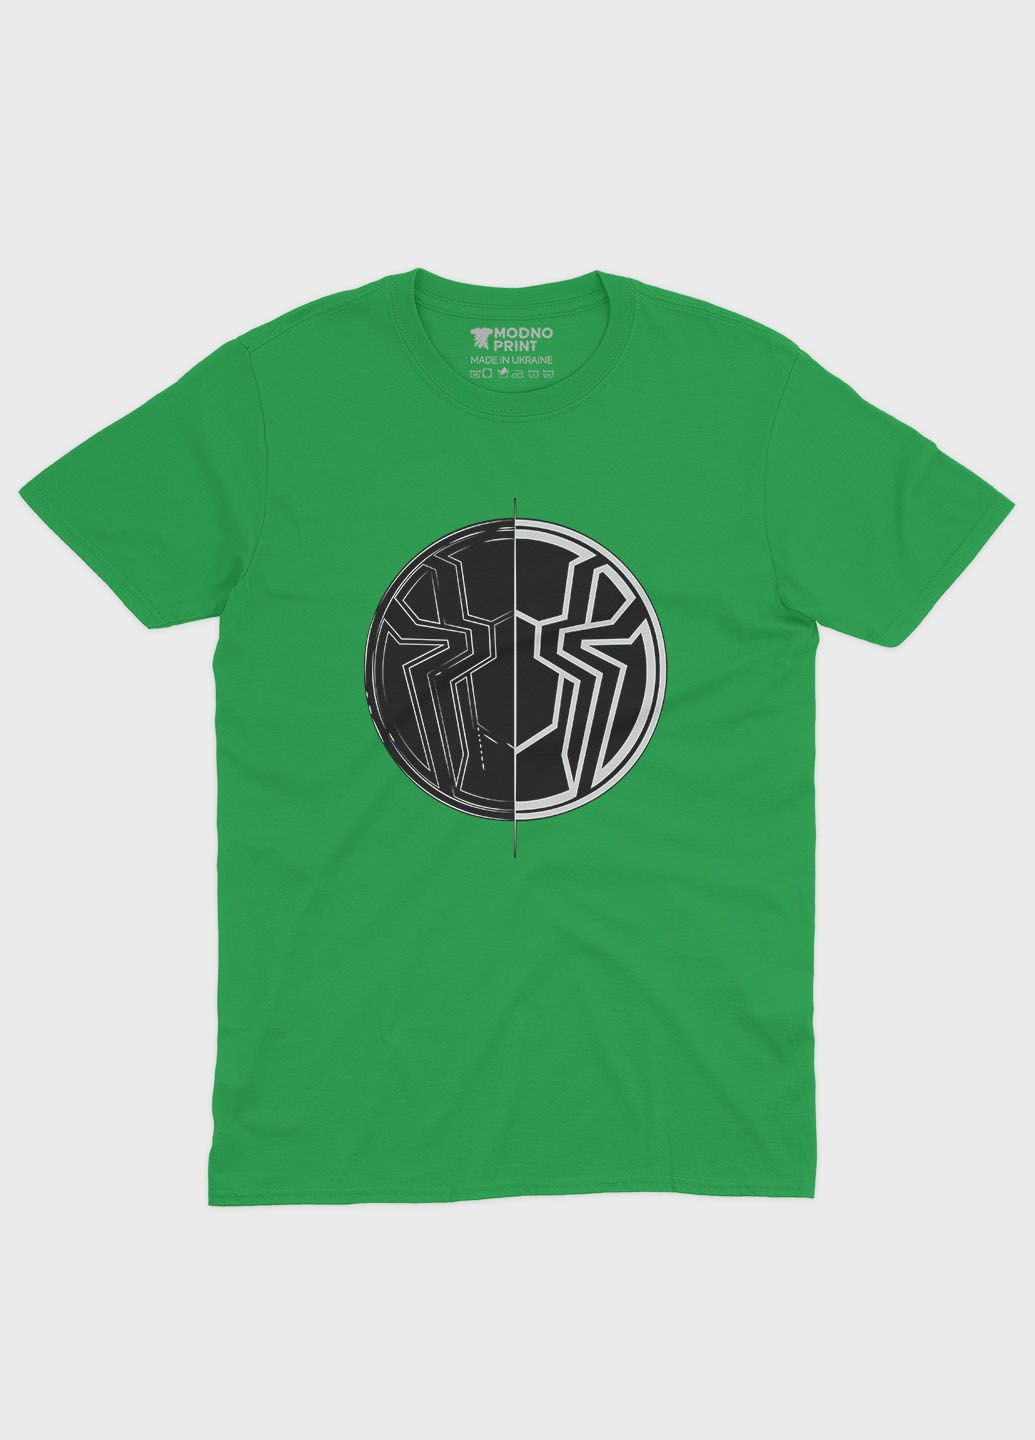 Зелена демісезонна футболка для хлопчика з принтом супергероя - людина-павук (ts001-1-keg-006-014-089-b) Modno